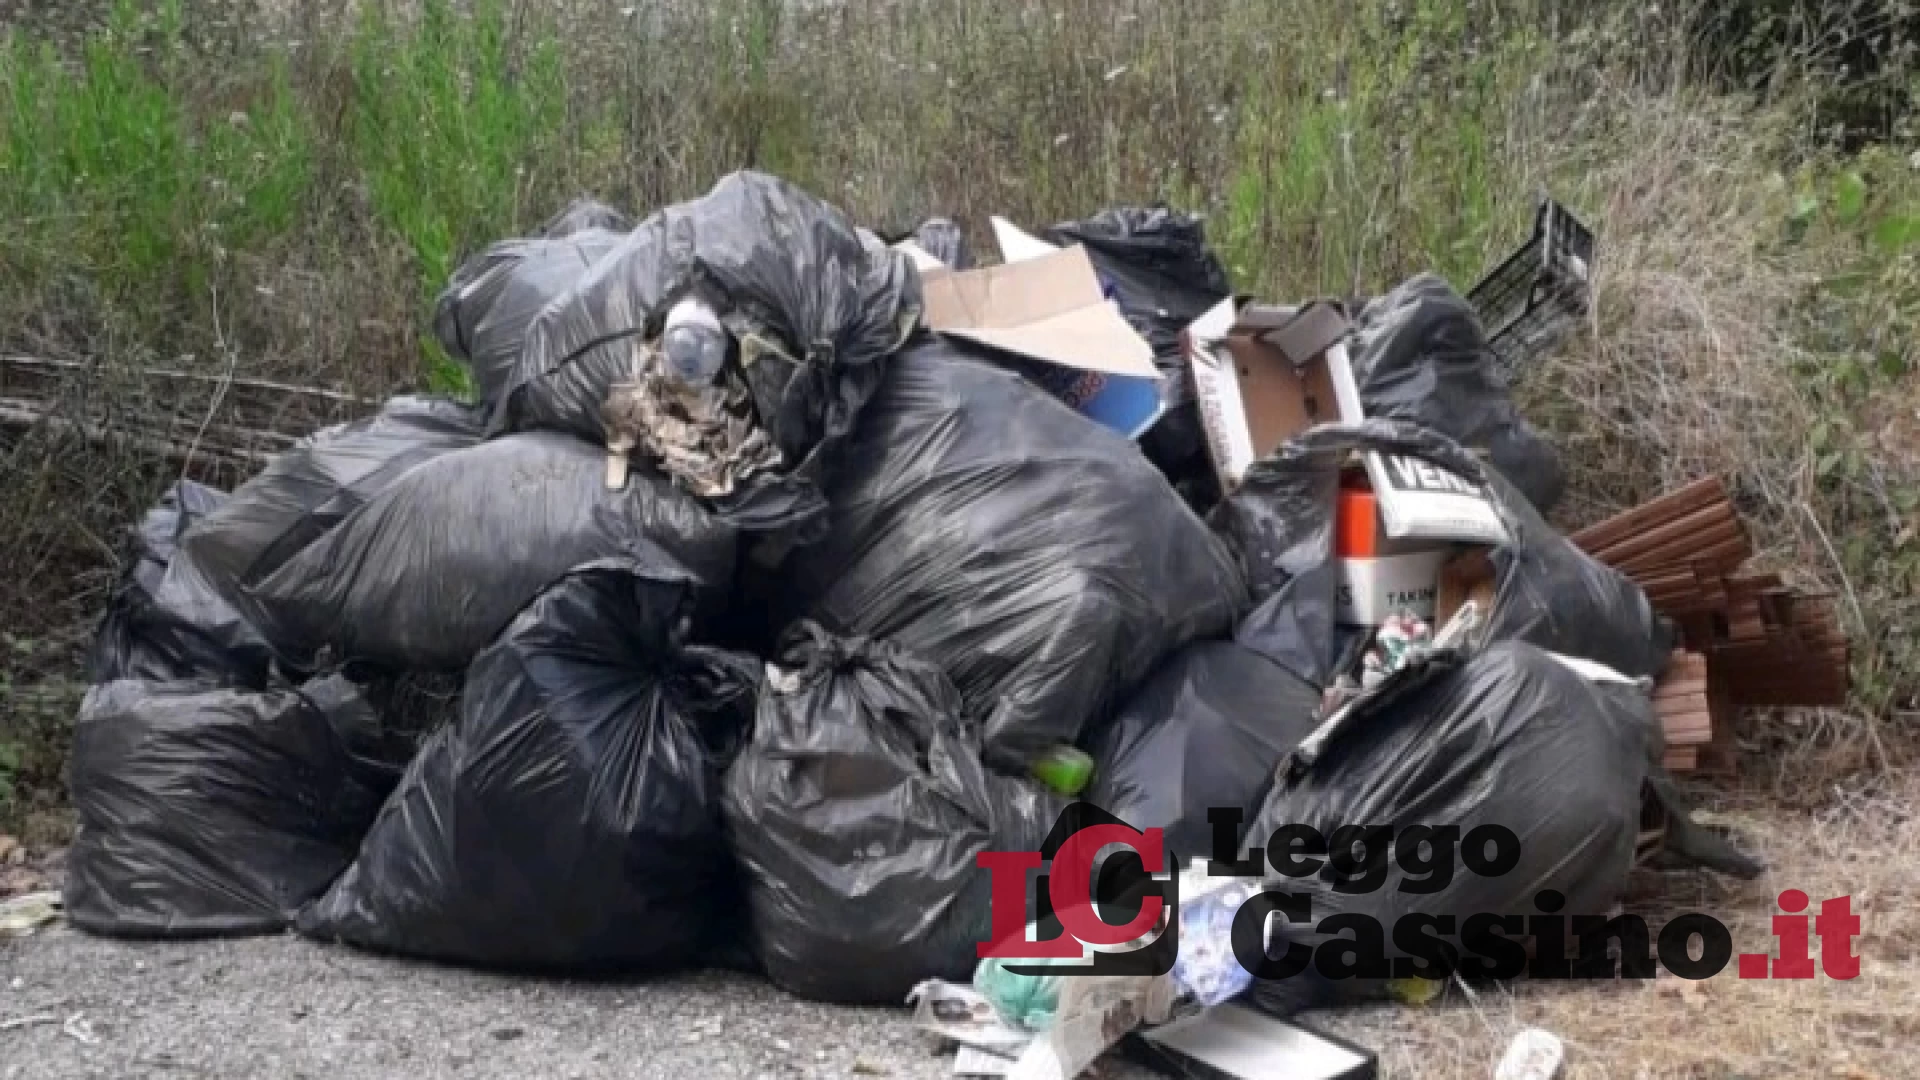 Filmati mentre abbandonano i rifiuti: scatta la multa